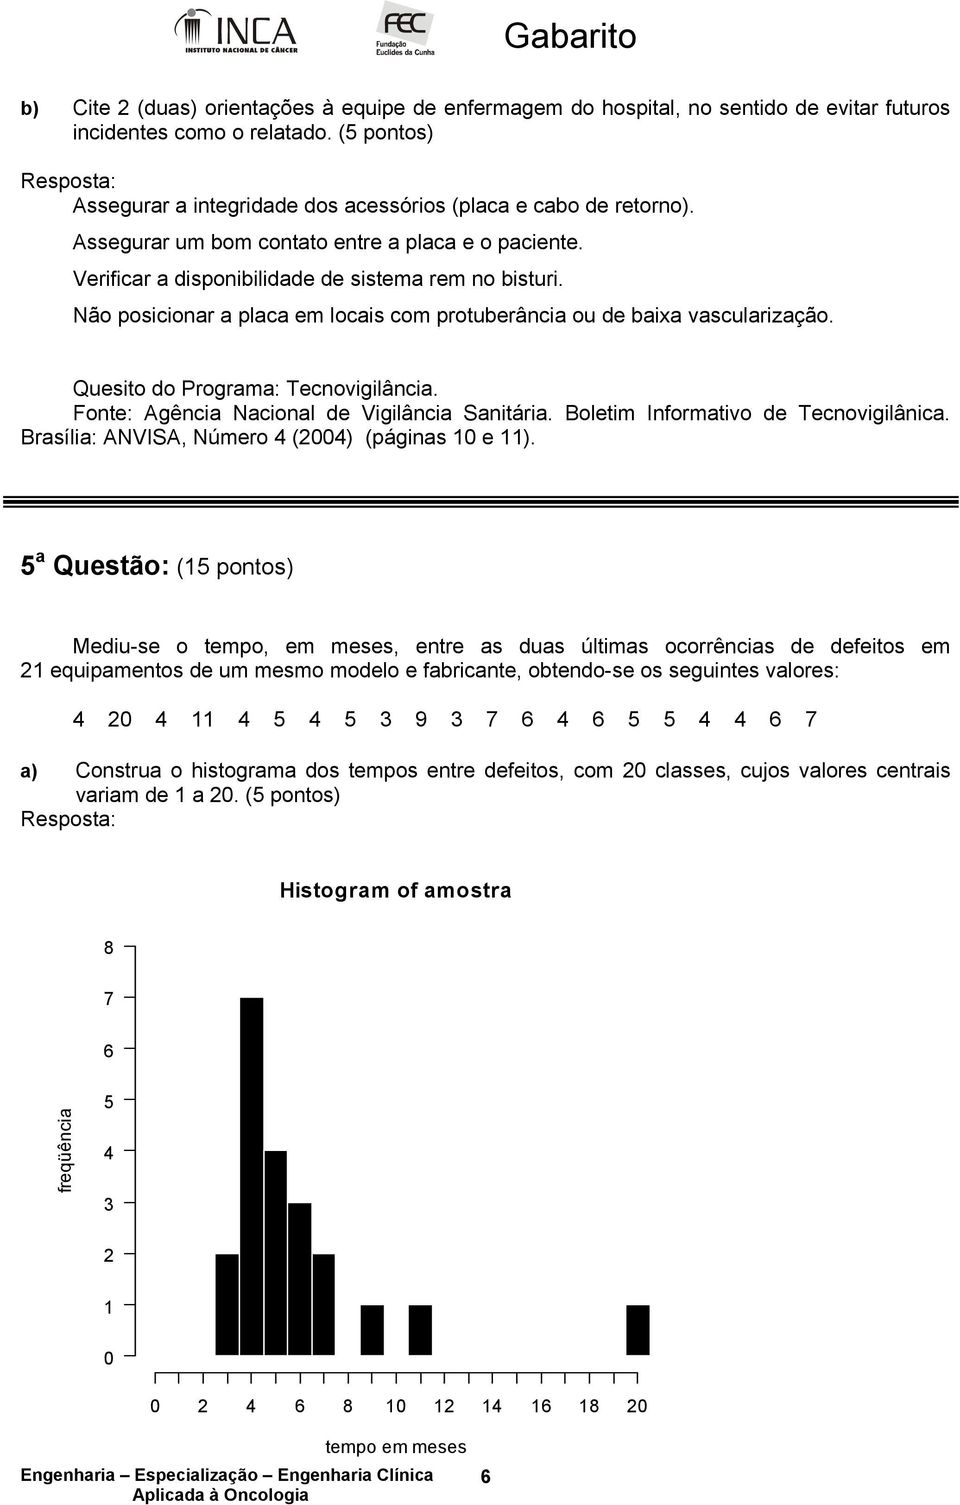 Quesito do Programa: Tecnovigilância. Fonte: Agência Nacional de Vigilância Sanitária. Boletim Informativo de Tecnovigilânica. Brasília: ANVISA, Número 4 (2004) (páginas 10 e 11).